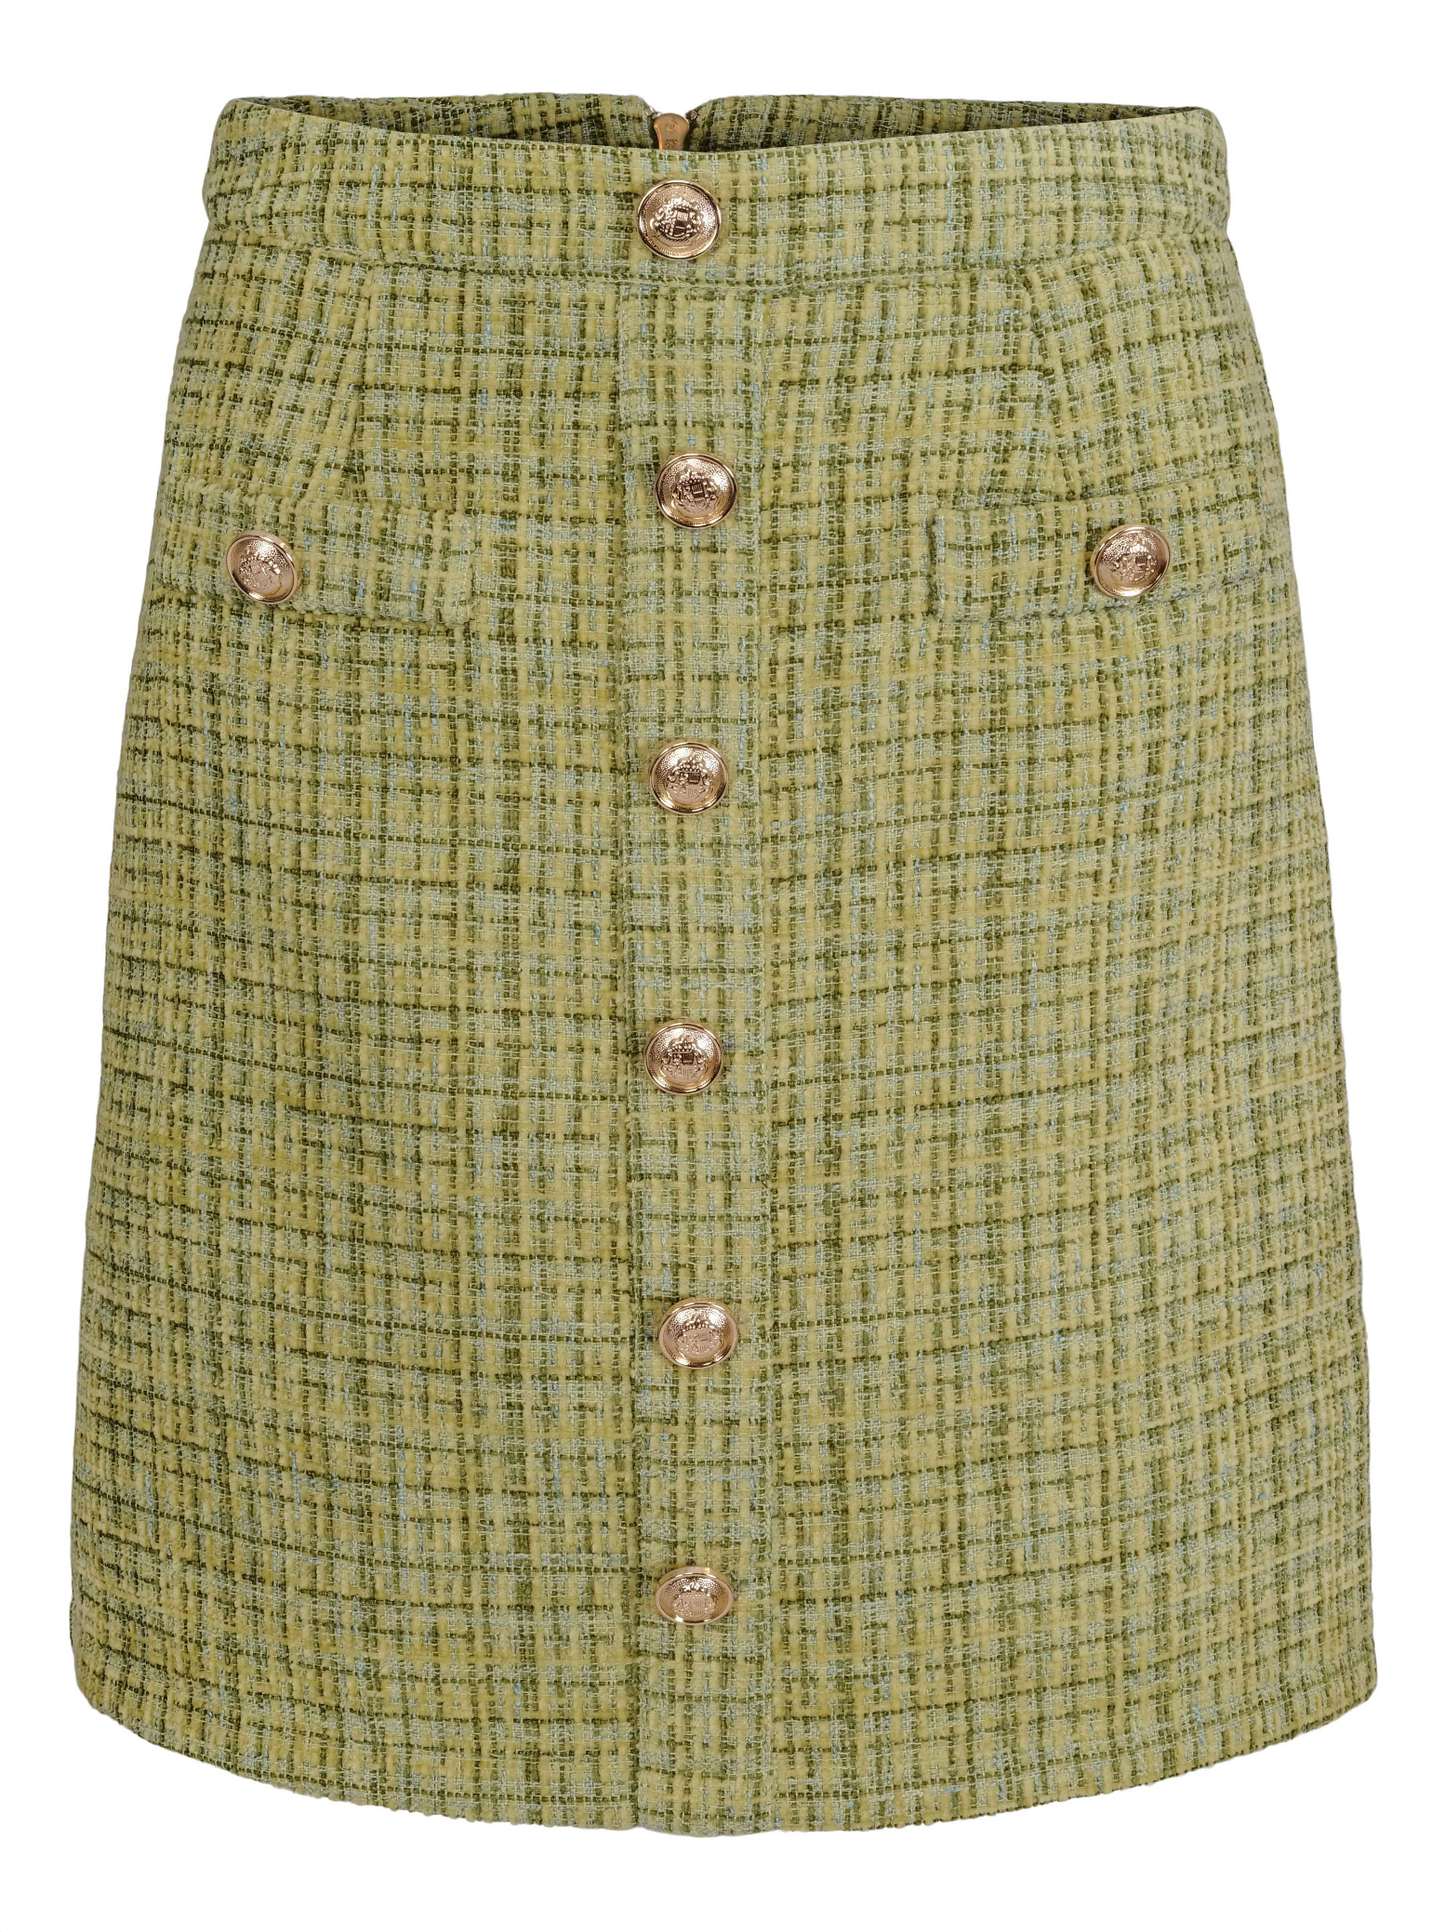 Mille skirt - Green tweed